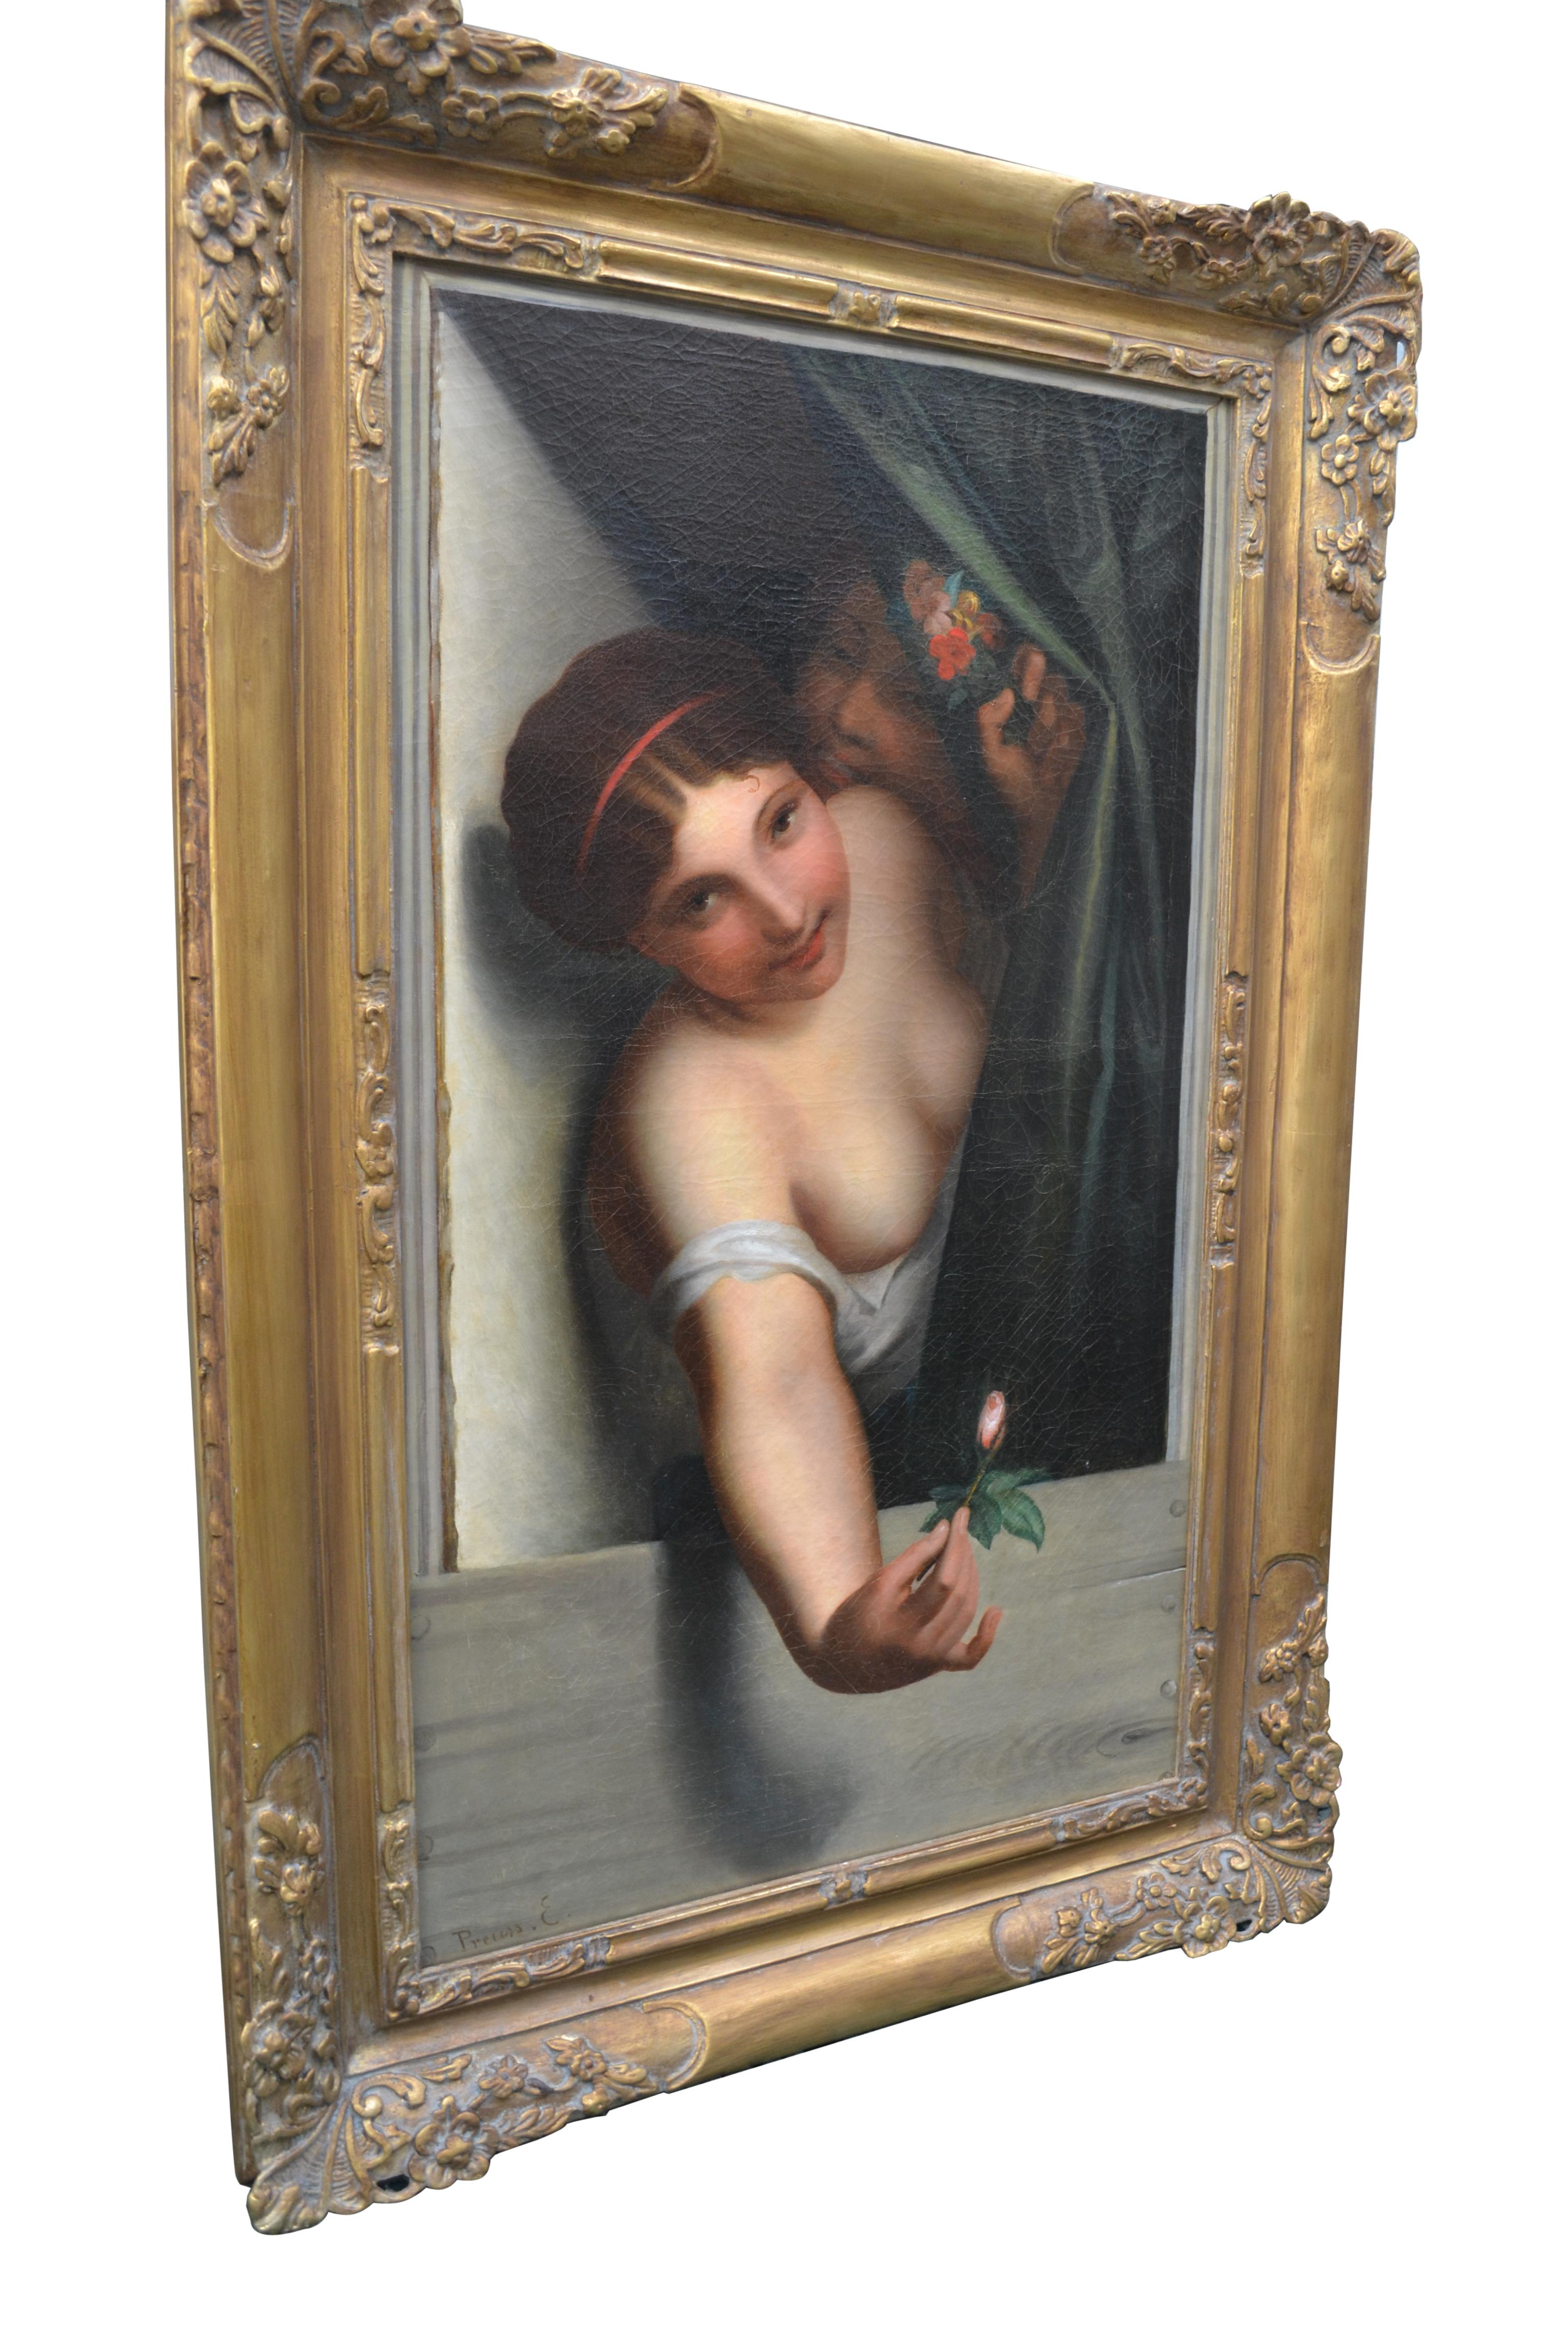 Une peinture à l'huile très suggestive d'une belle femme aux seins nus, qui pourrait être une prostituée ou une tentatrice, se penchant dans une fenêtre pour offrir un bouton de rose à un admirateur, et semblant être encouragée à faire ce geste par